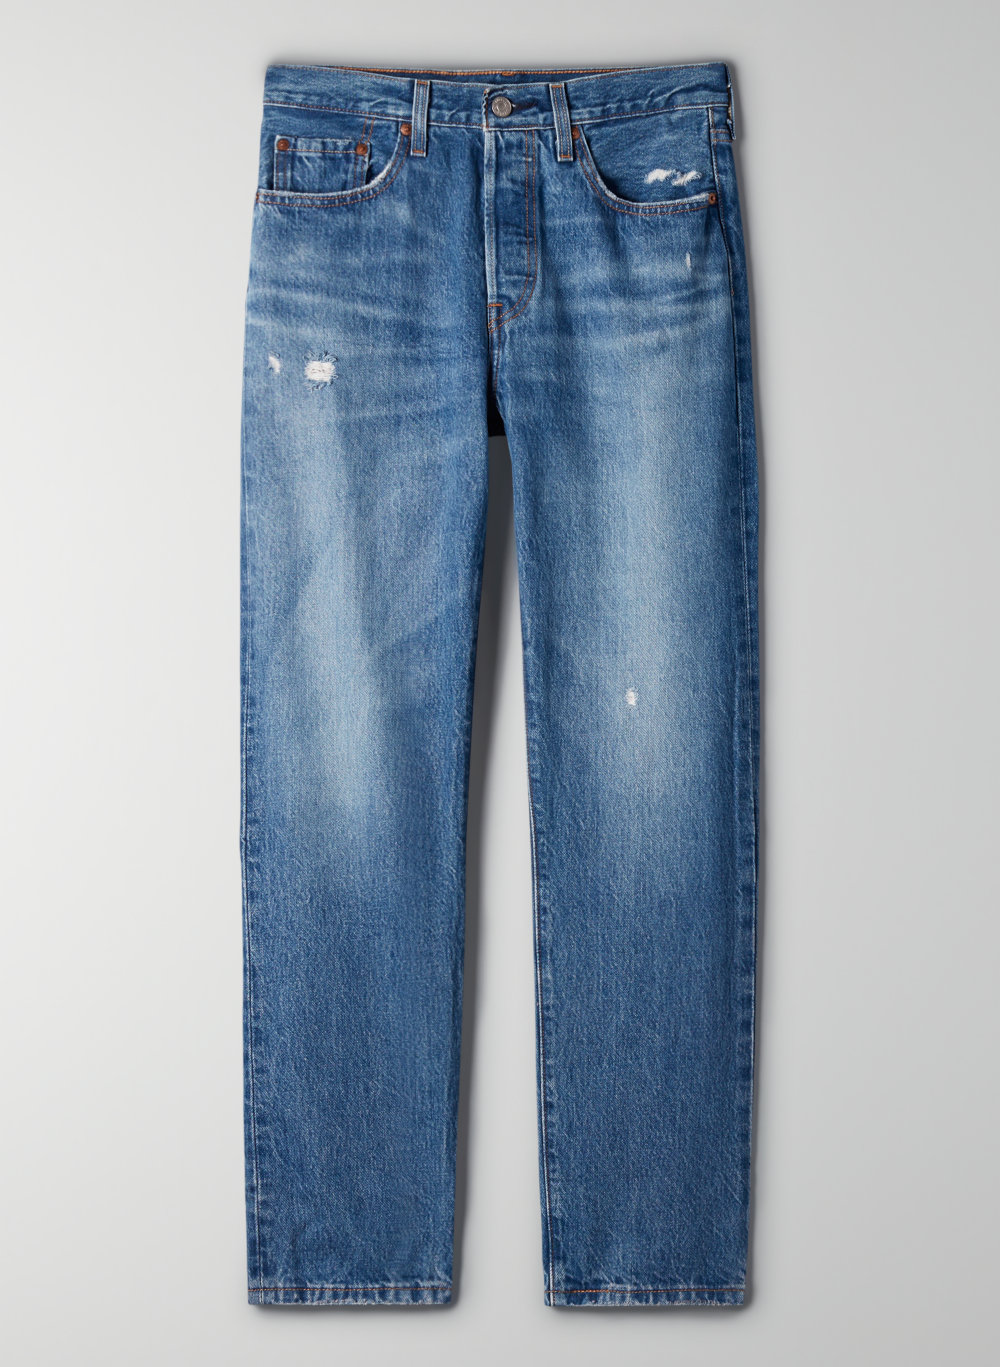 levi jeans long length